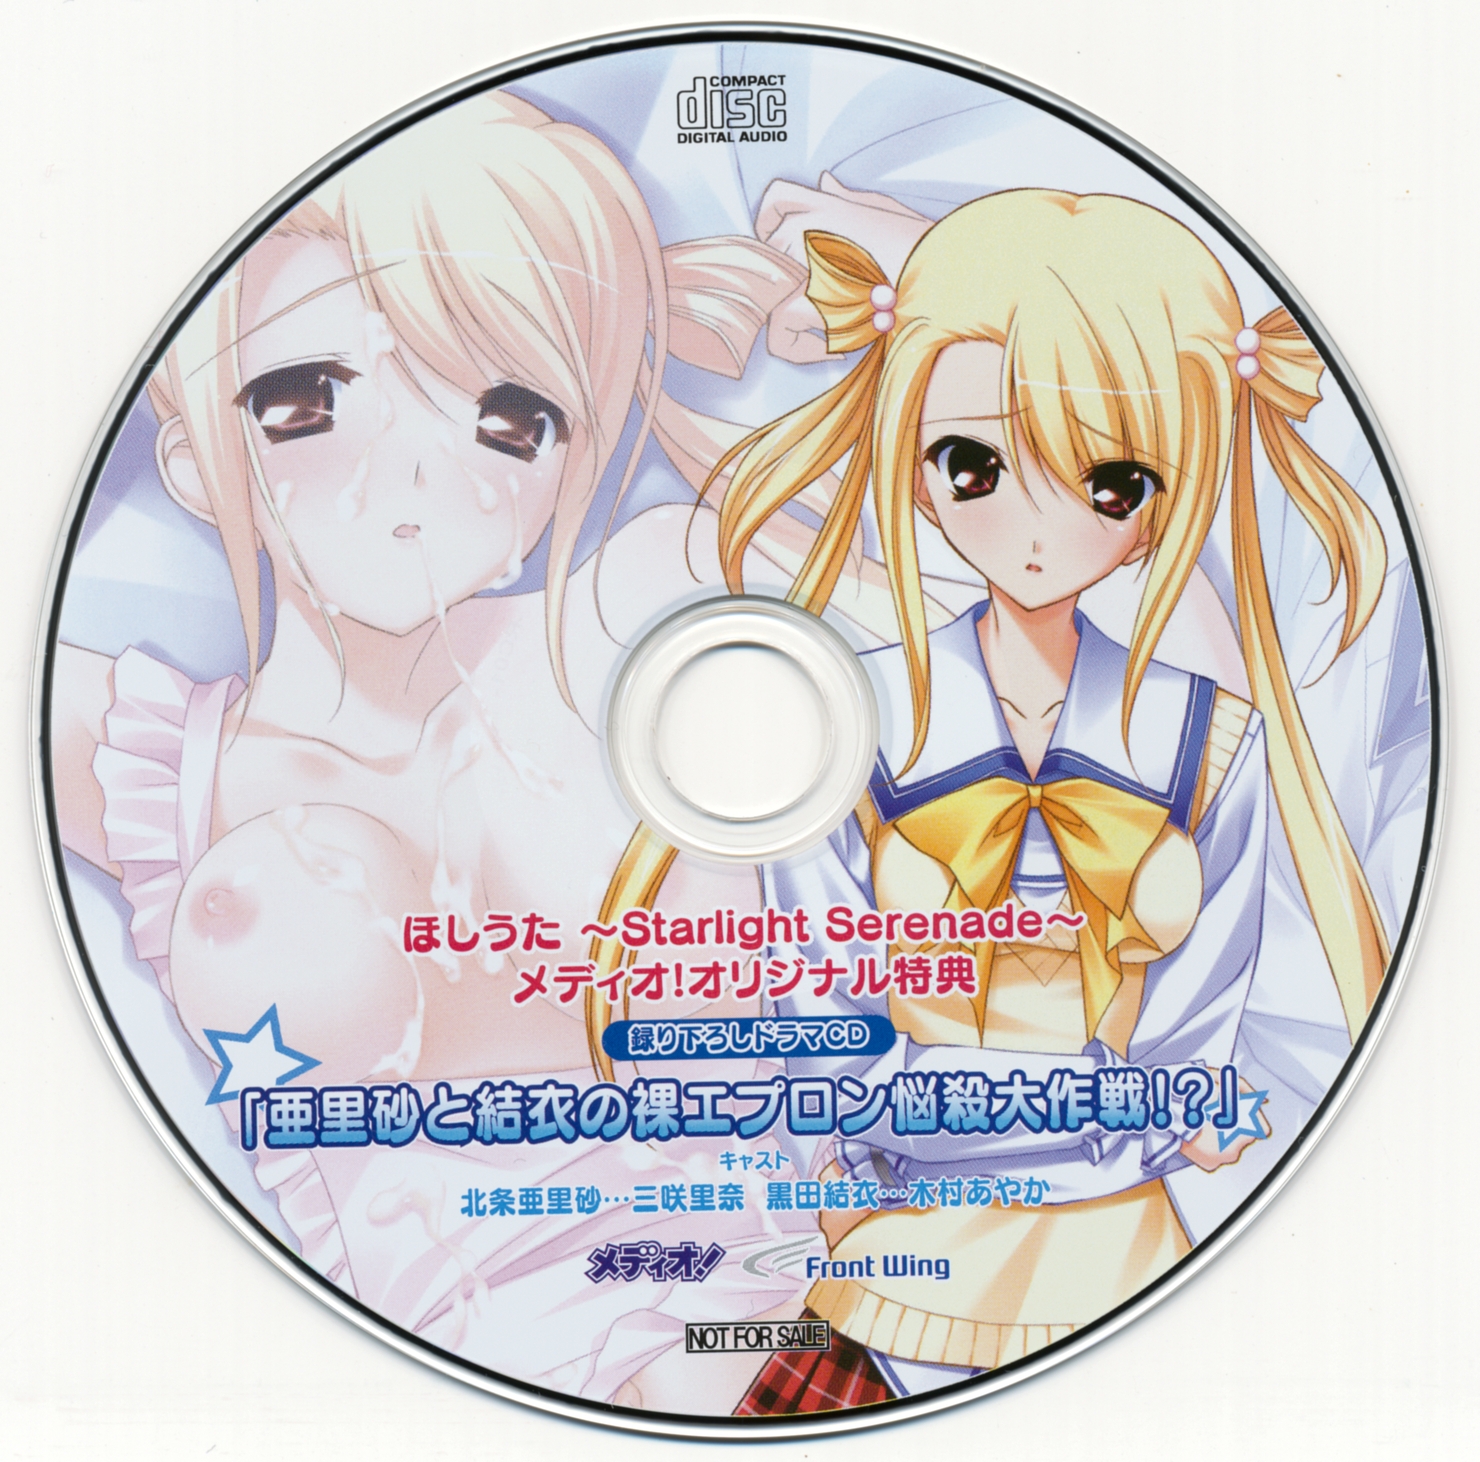 Hoshiuta ~Starlight Serenade~ Medio Privilege Drama CD [V-0912-2] MP3 -  Download Hoshiuta ~Starlight Serenade~ Medio Privilege Drama CD [V-0912-2]  Soundtracks for FREE!